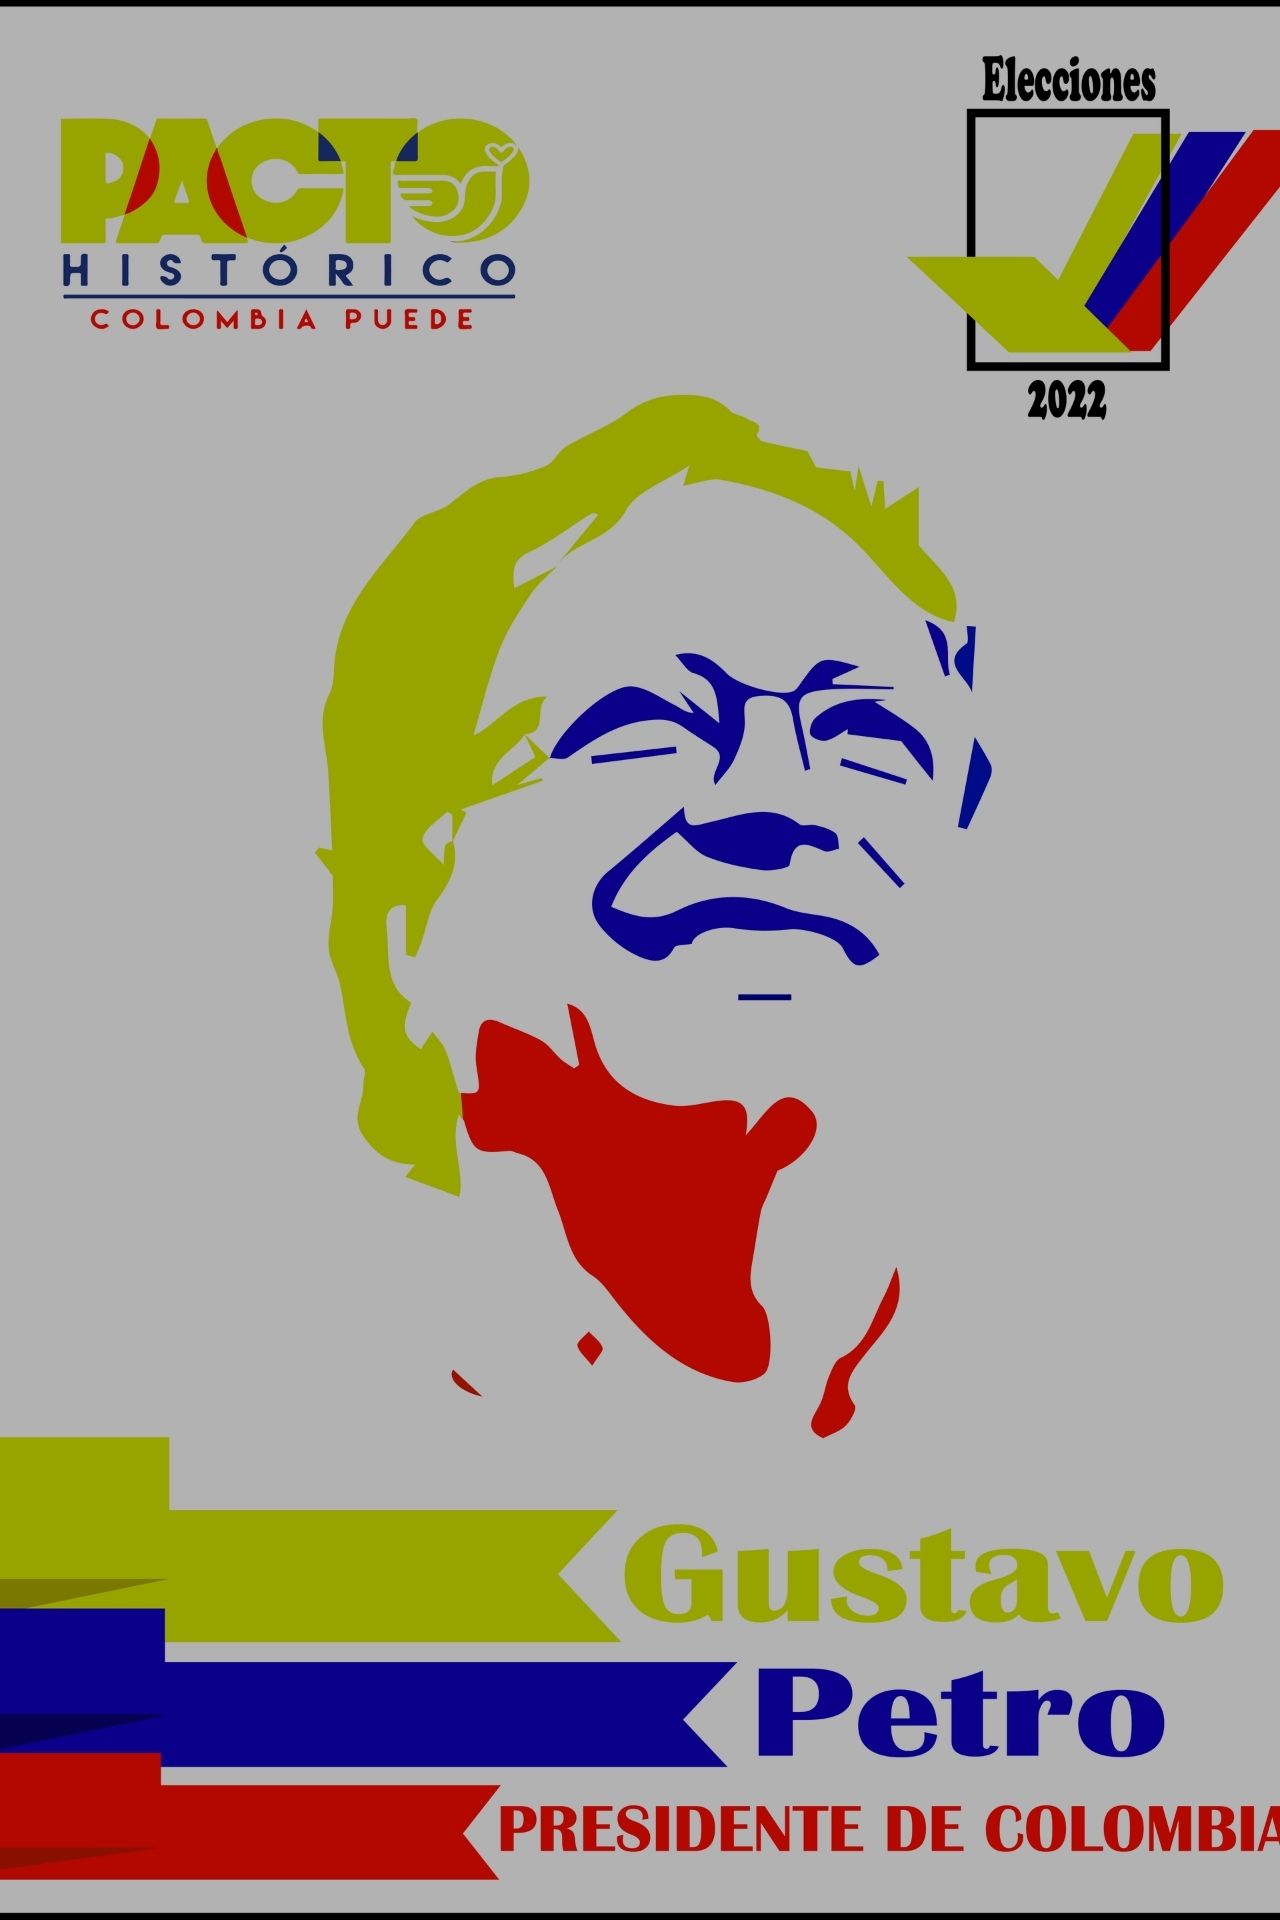 Gustavo Petro el nuevo presidente de Colombia